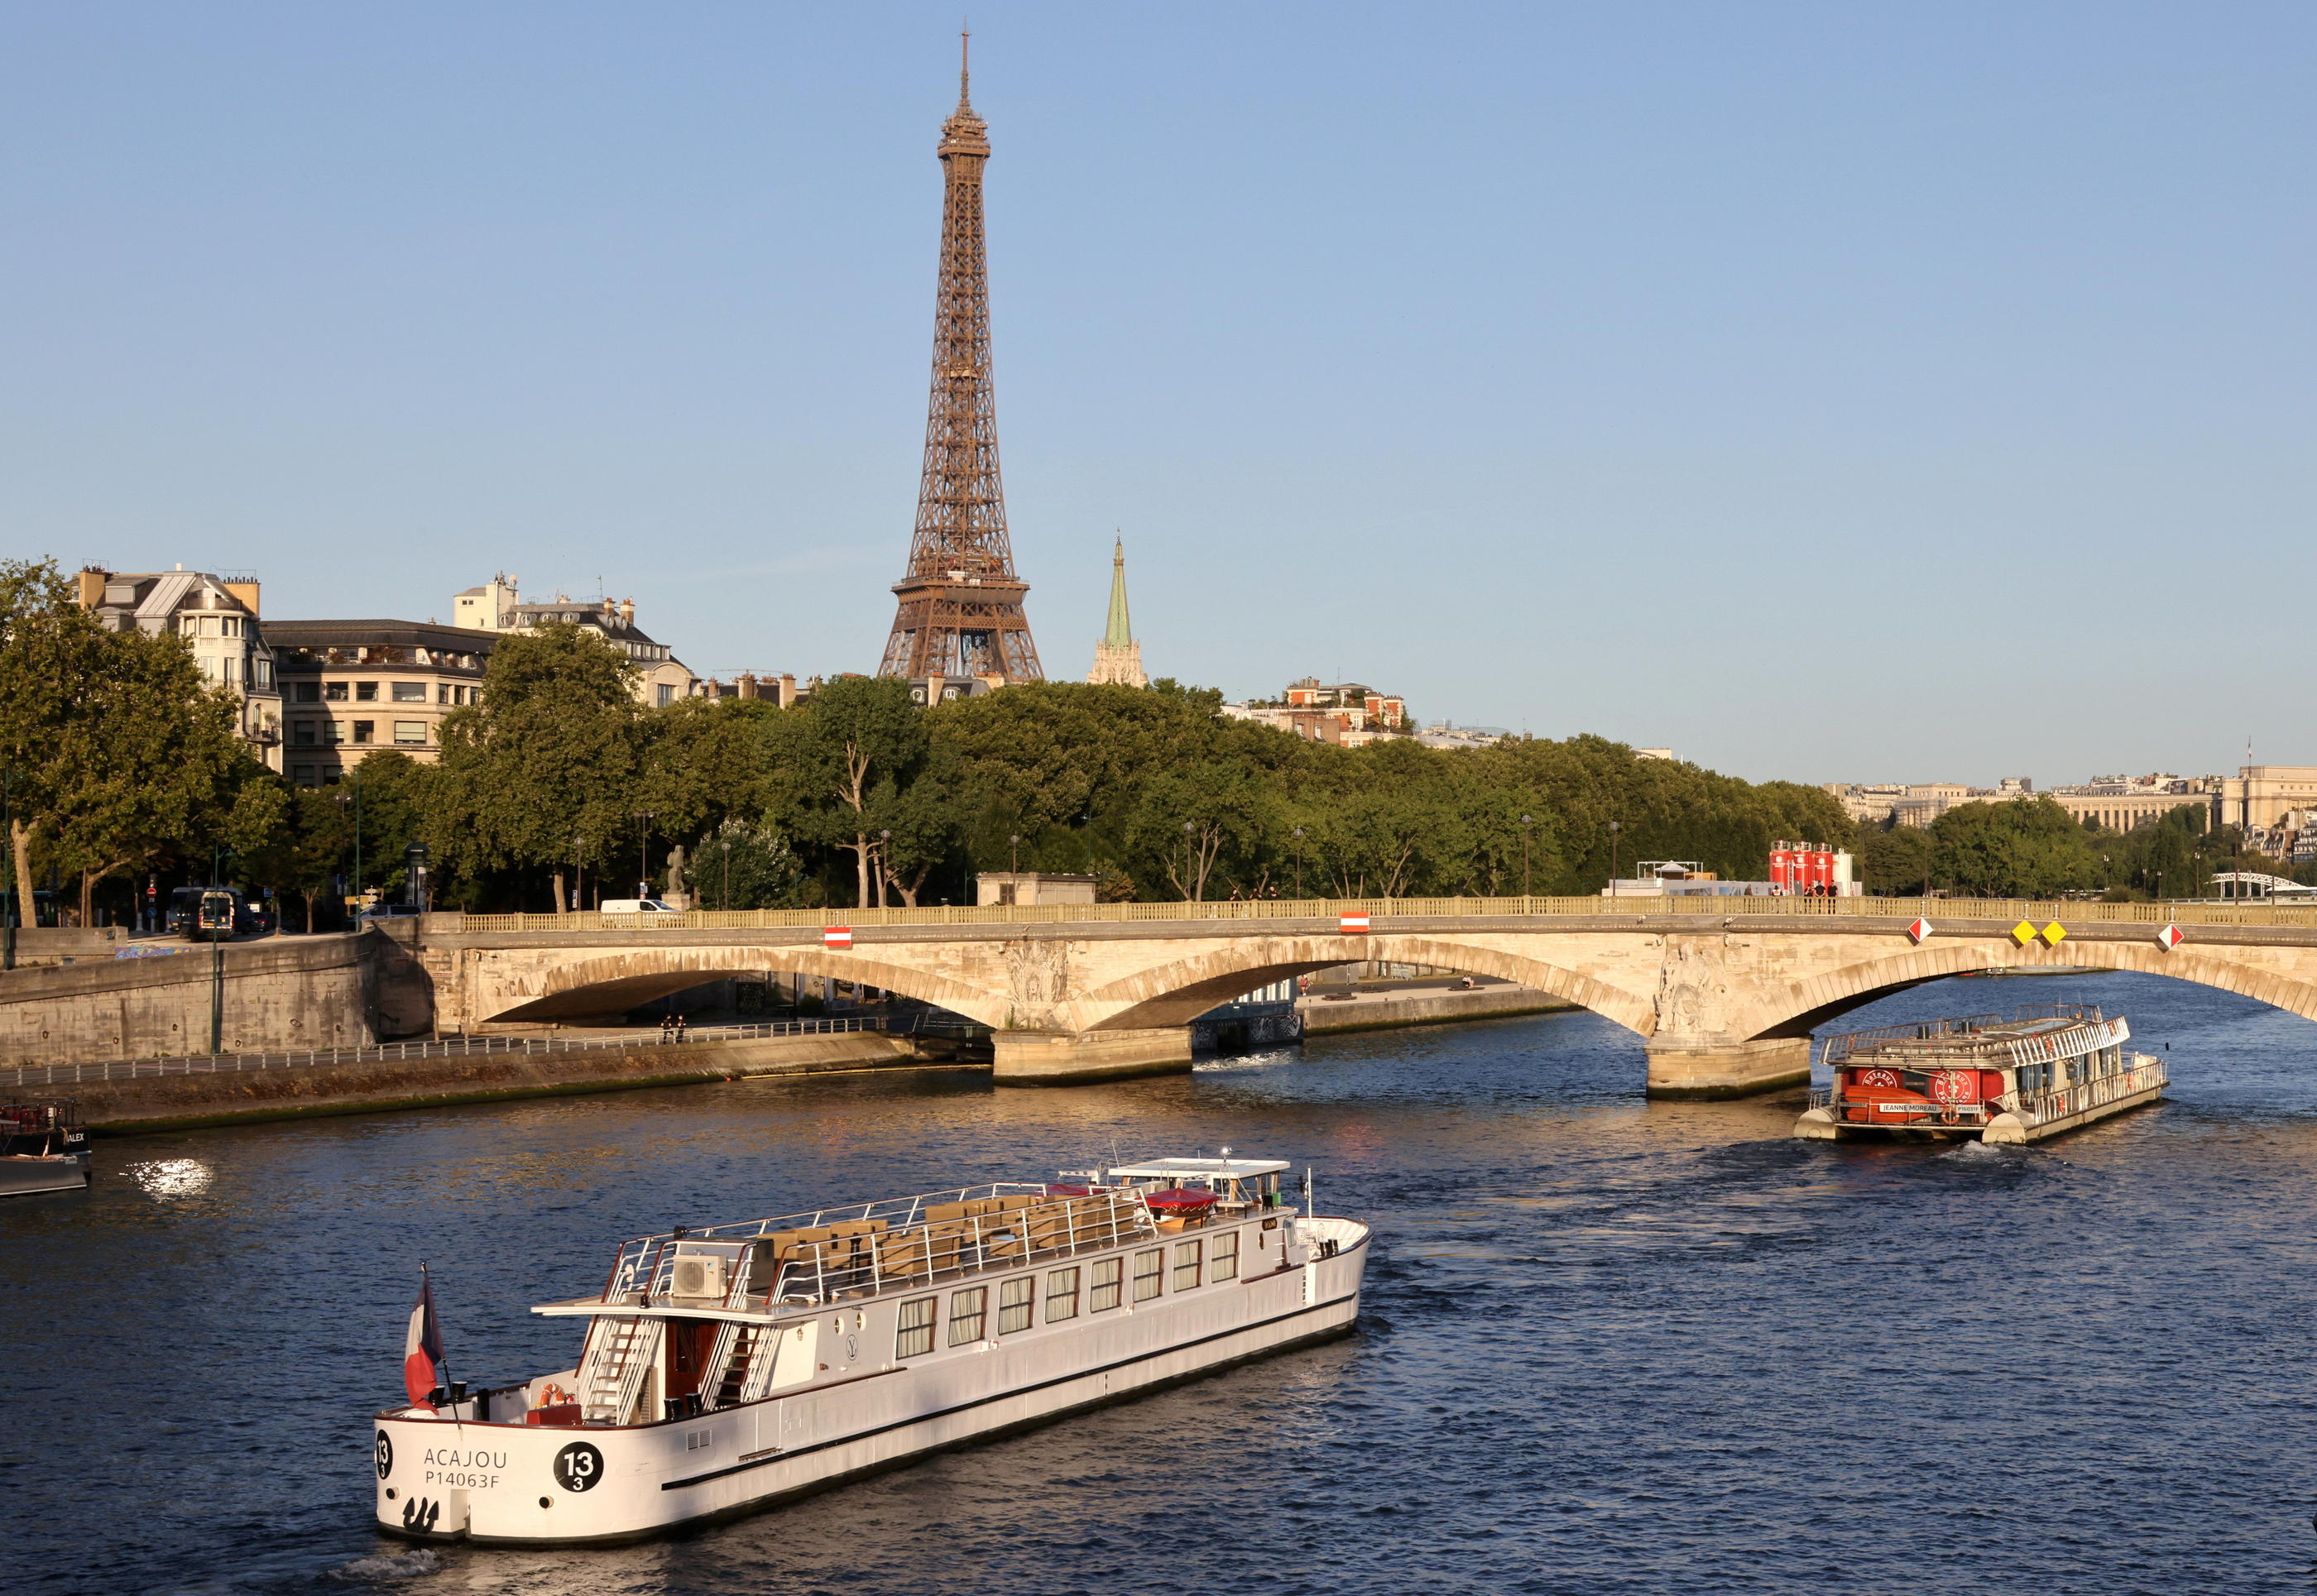 La Seine, l’Oise et la Somme seraient, selon une étude, massivement contaminées par de l’acide trifluoroacétique (TFA). Le Parisien/Delphine Goldsztejn